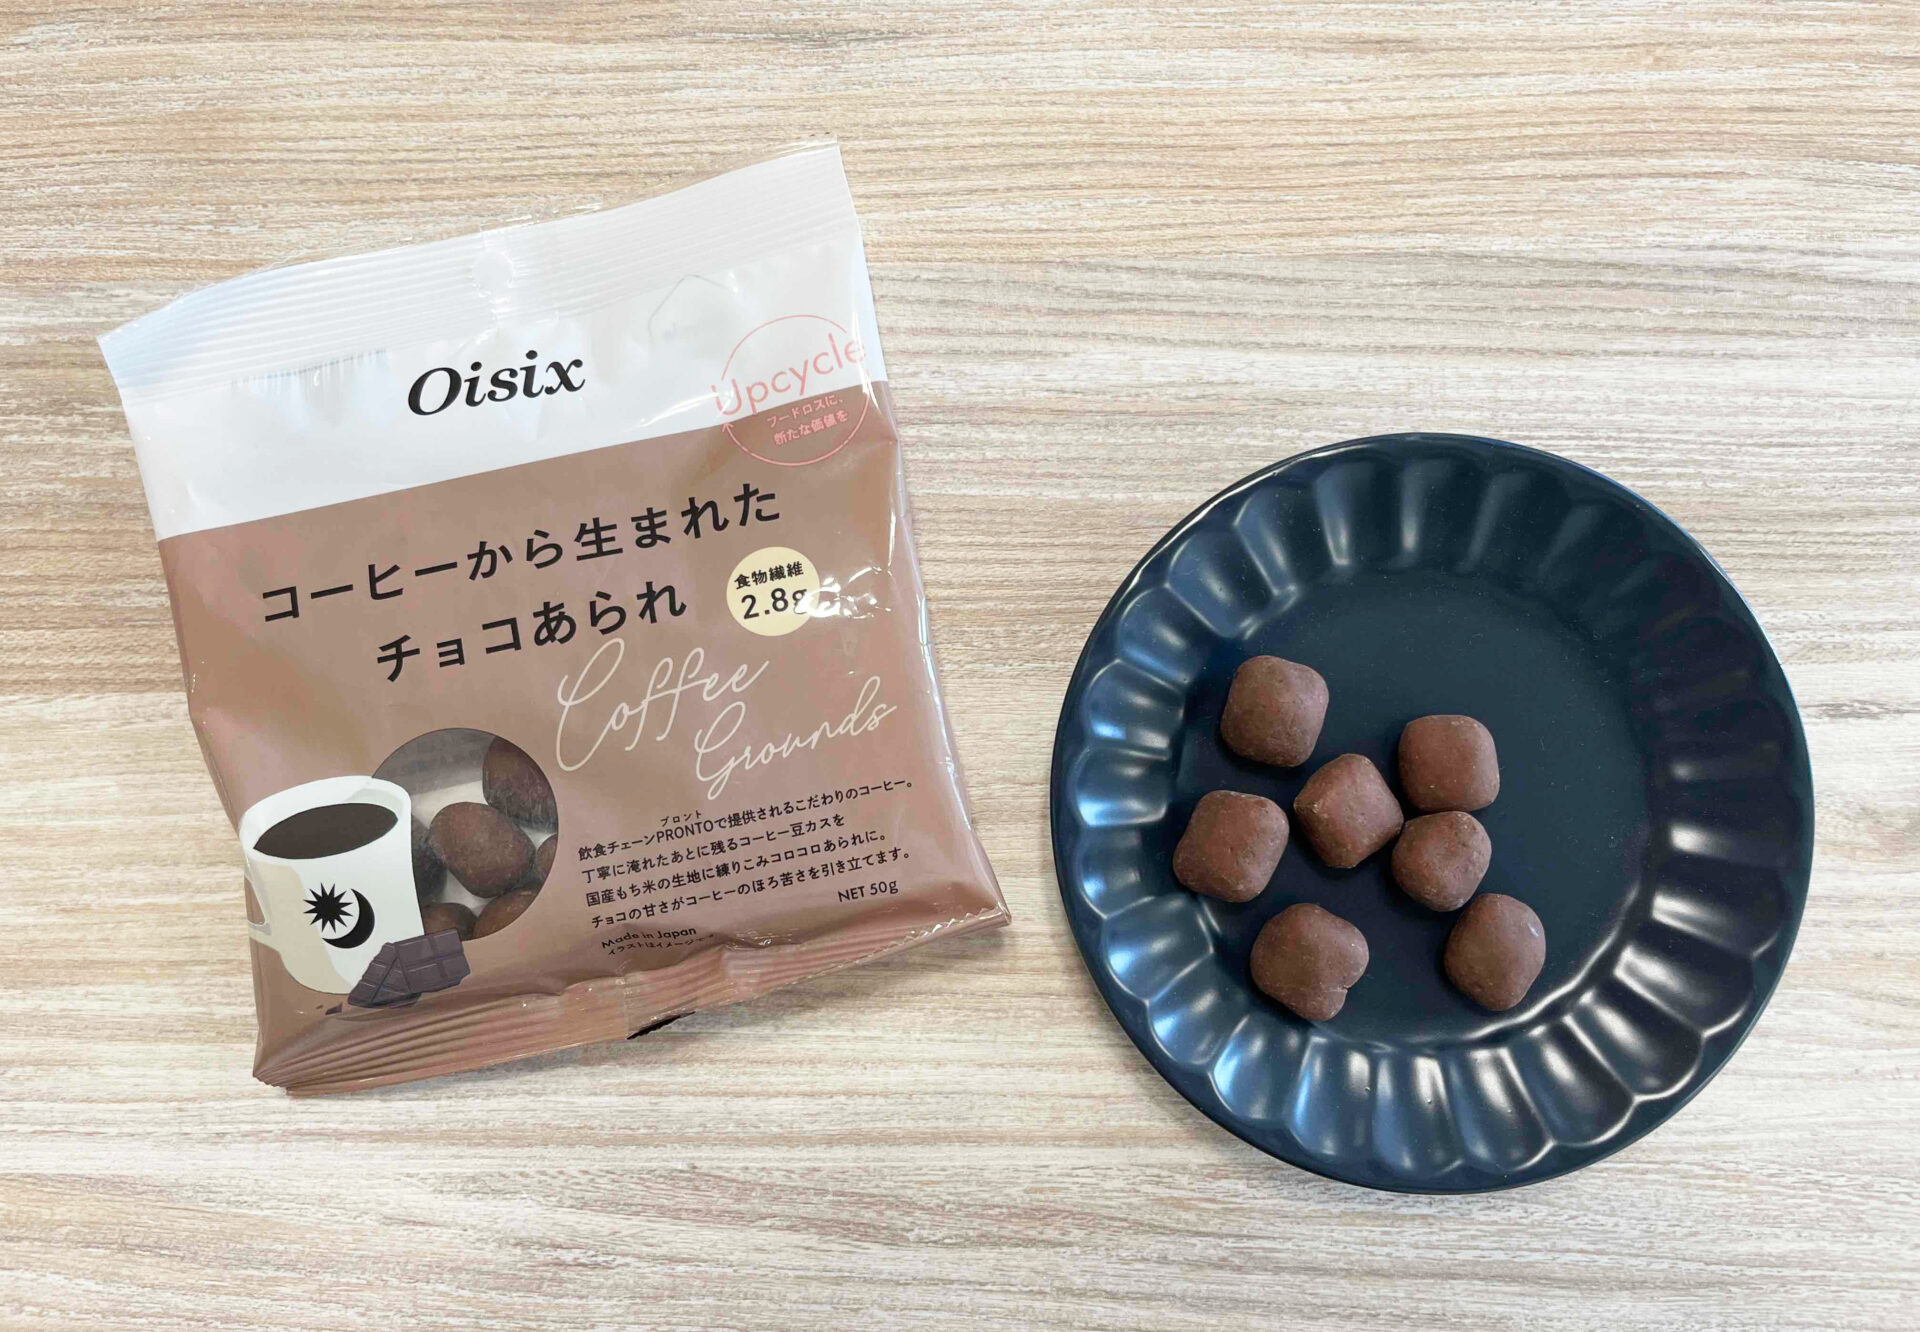 オイシックスから出ている、コーヒーから生まれたチョコあられのパッケージとお皿に乗っているチョコあられの写真